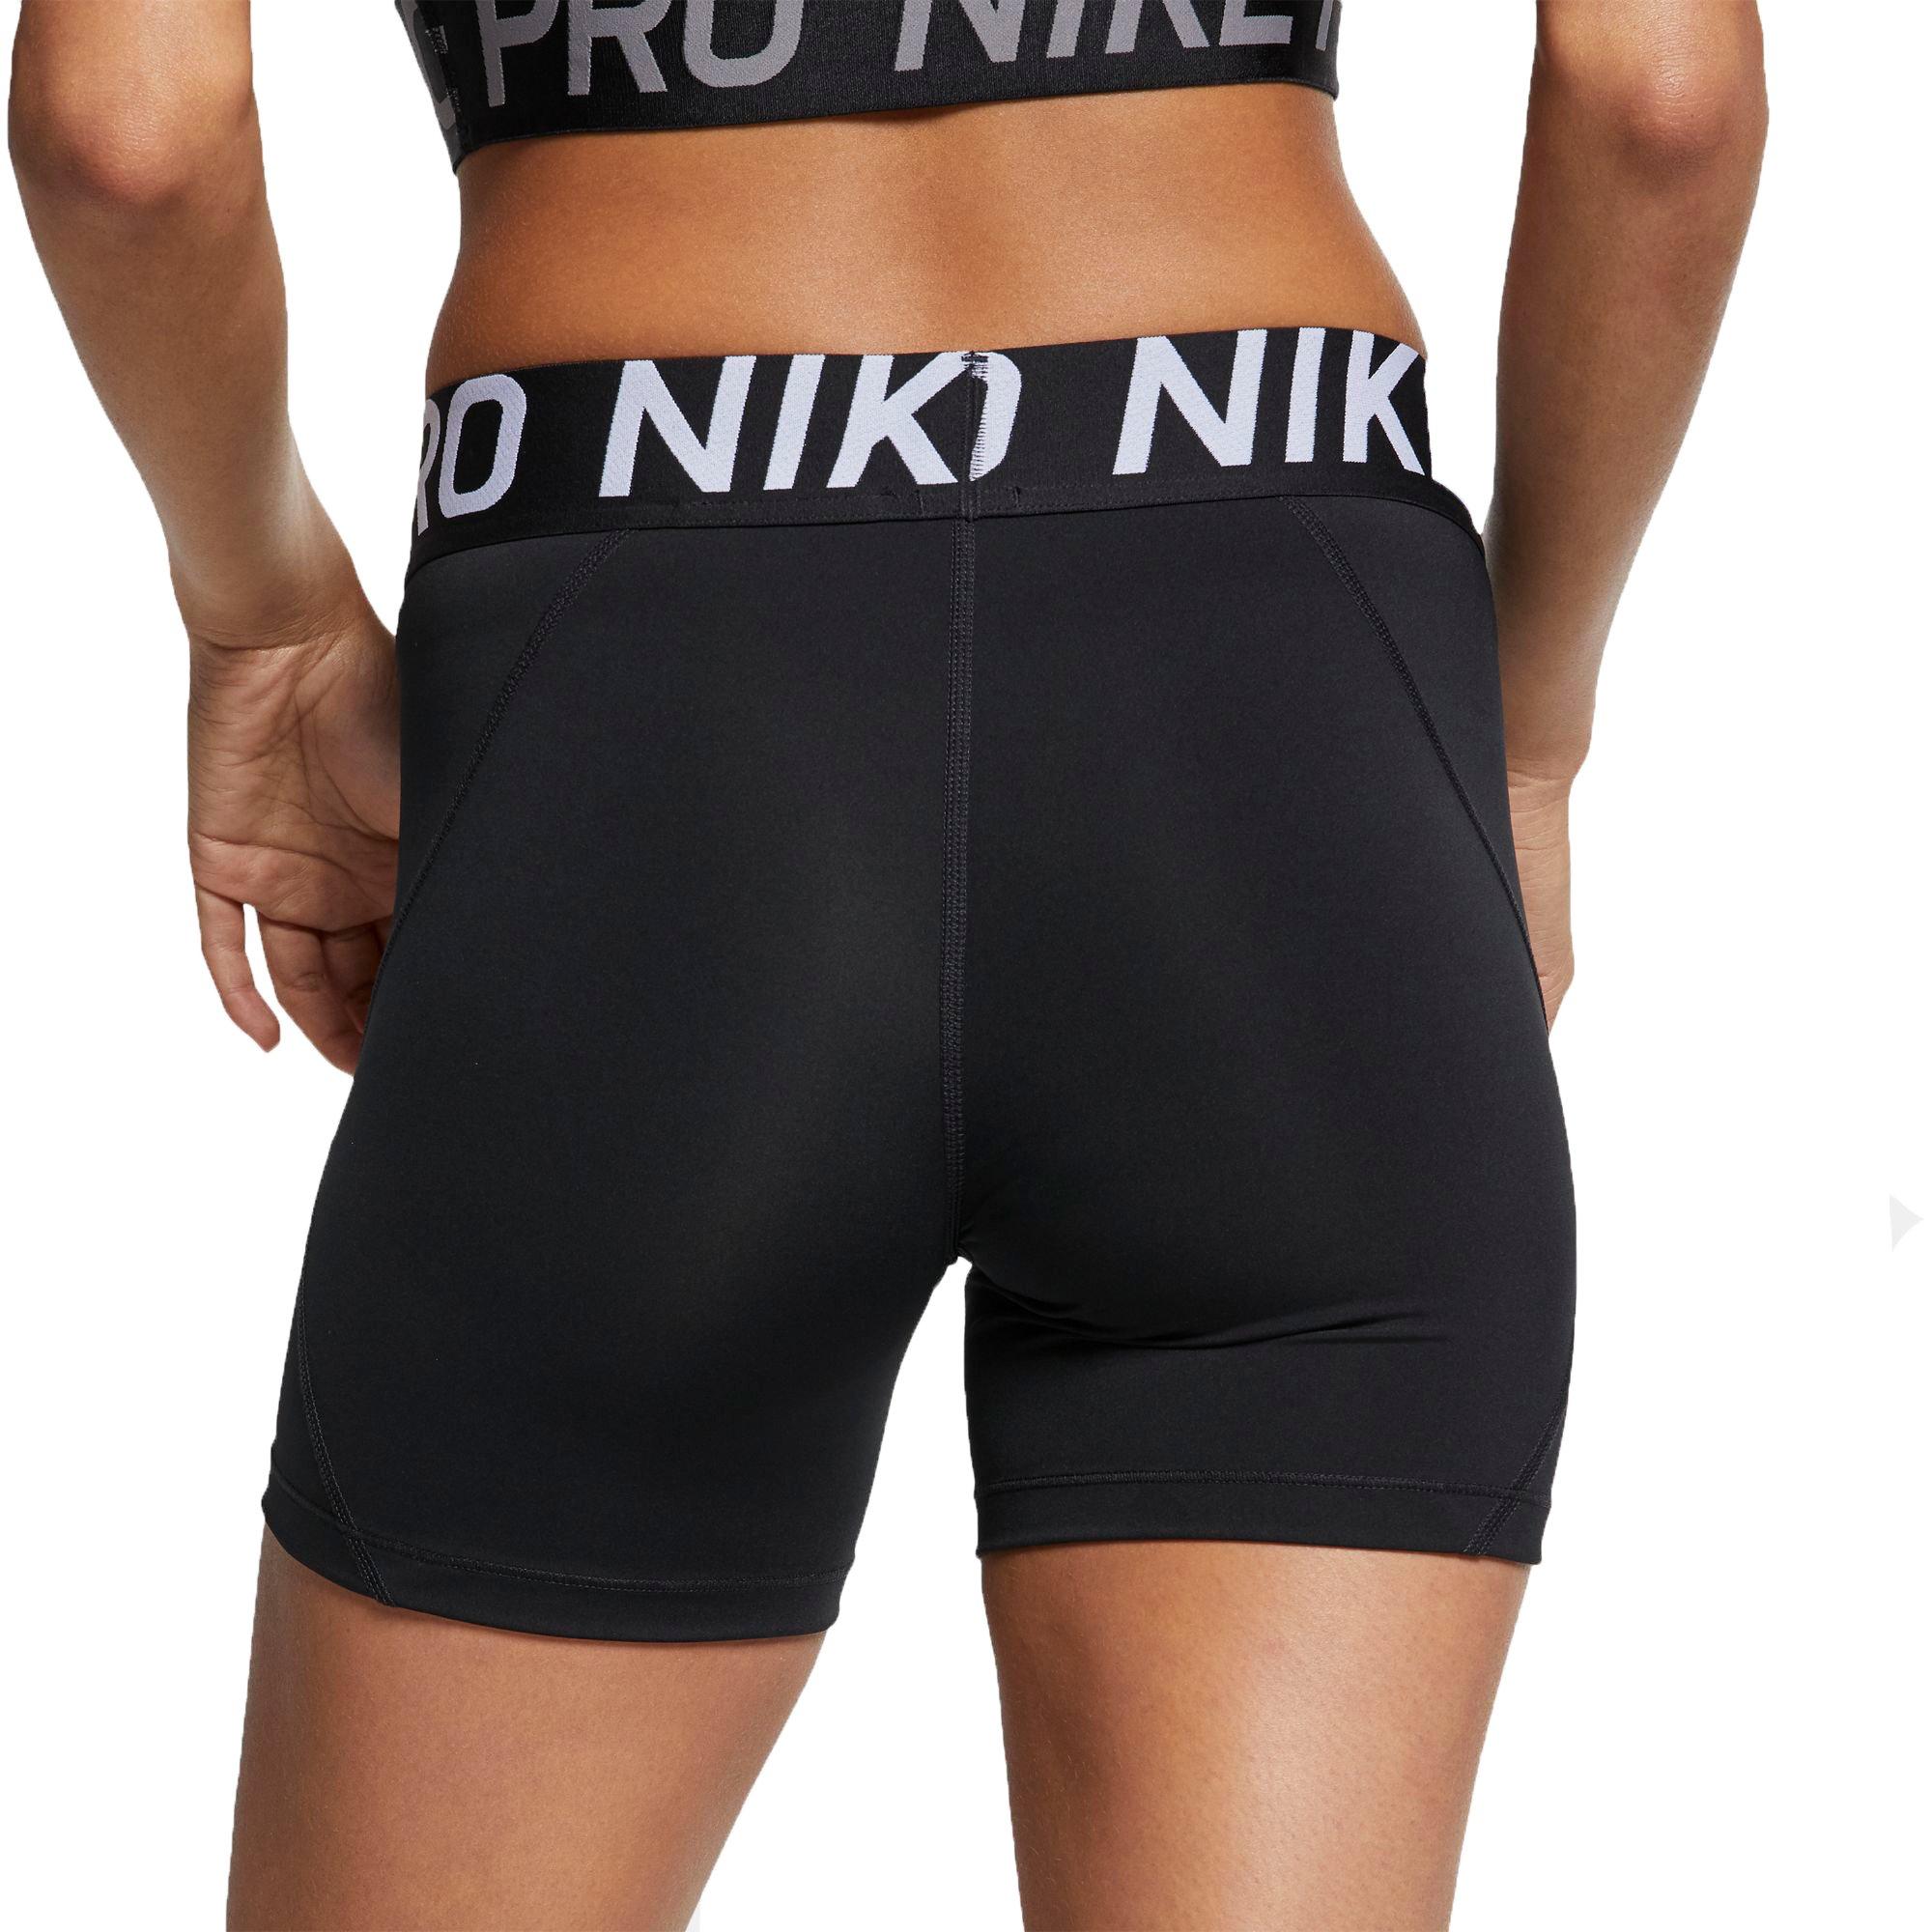 nike women's pro 5 inch shorts